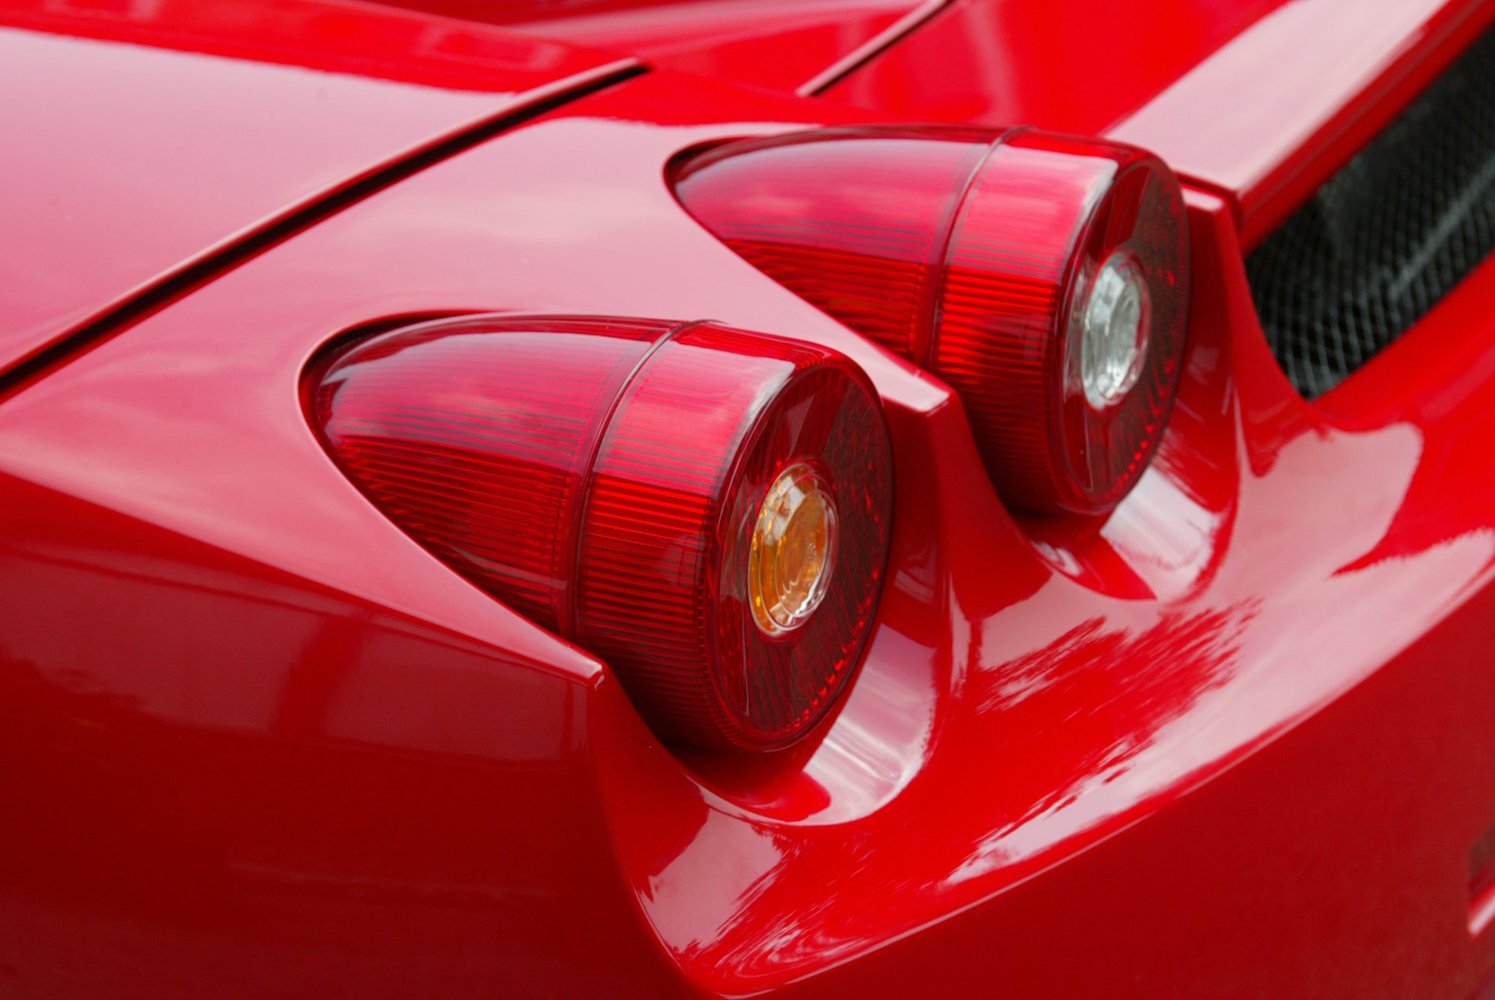 купе Ferrari Enzo 2002 - 2004г выпуска модификация 6.0 MT (660 л.с.)